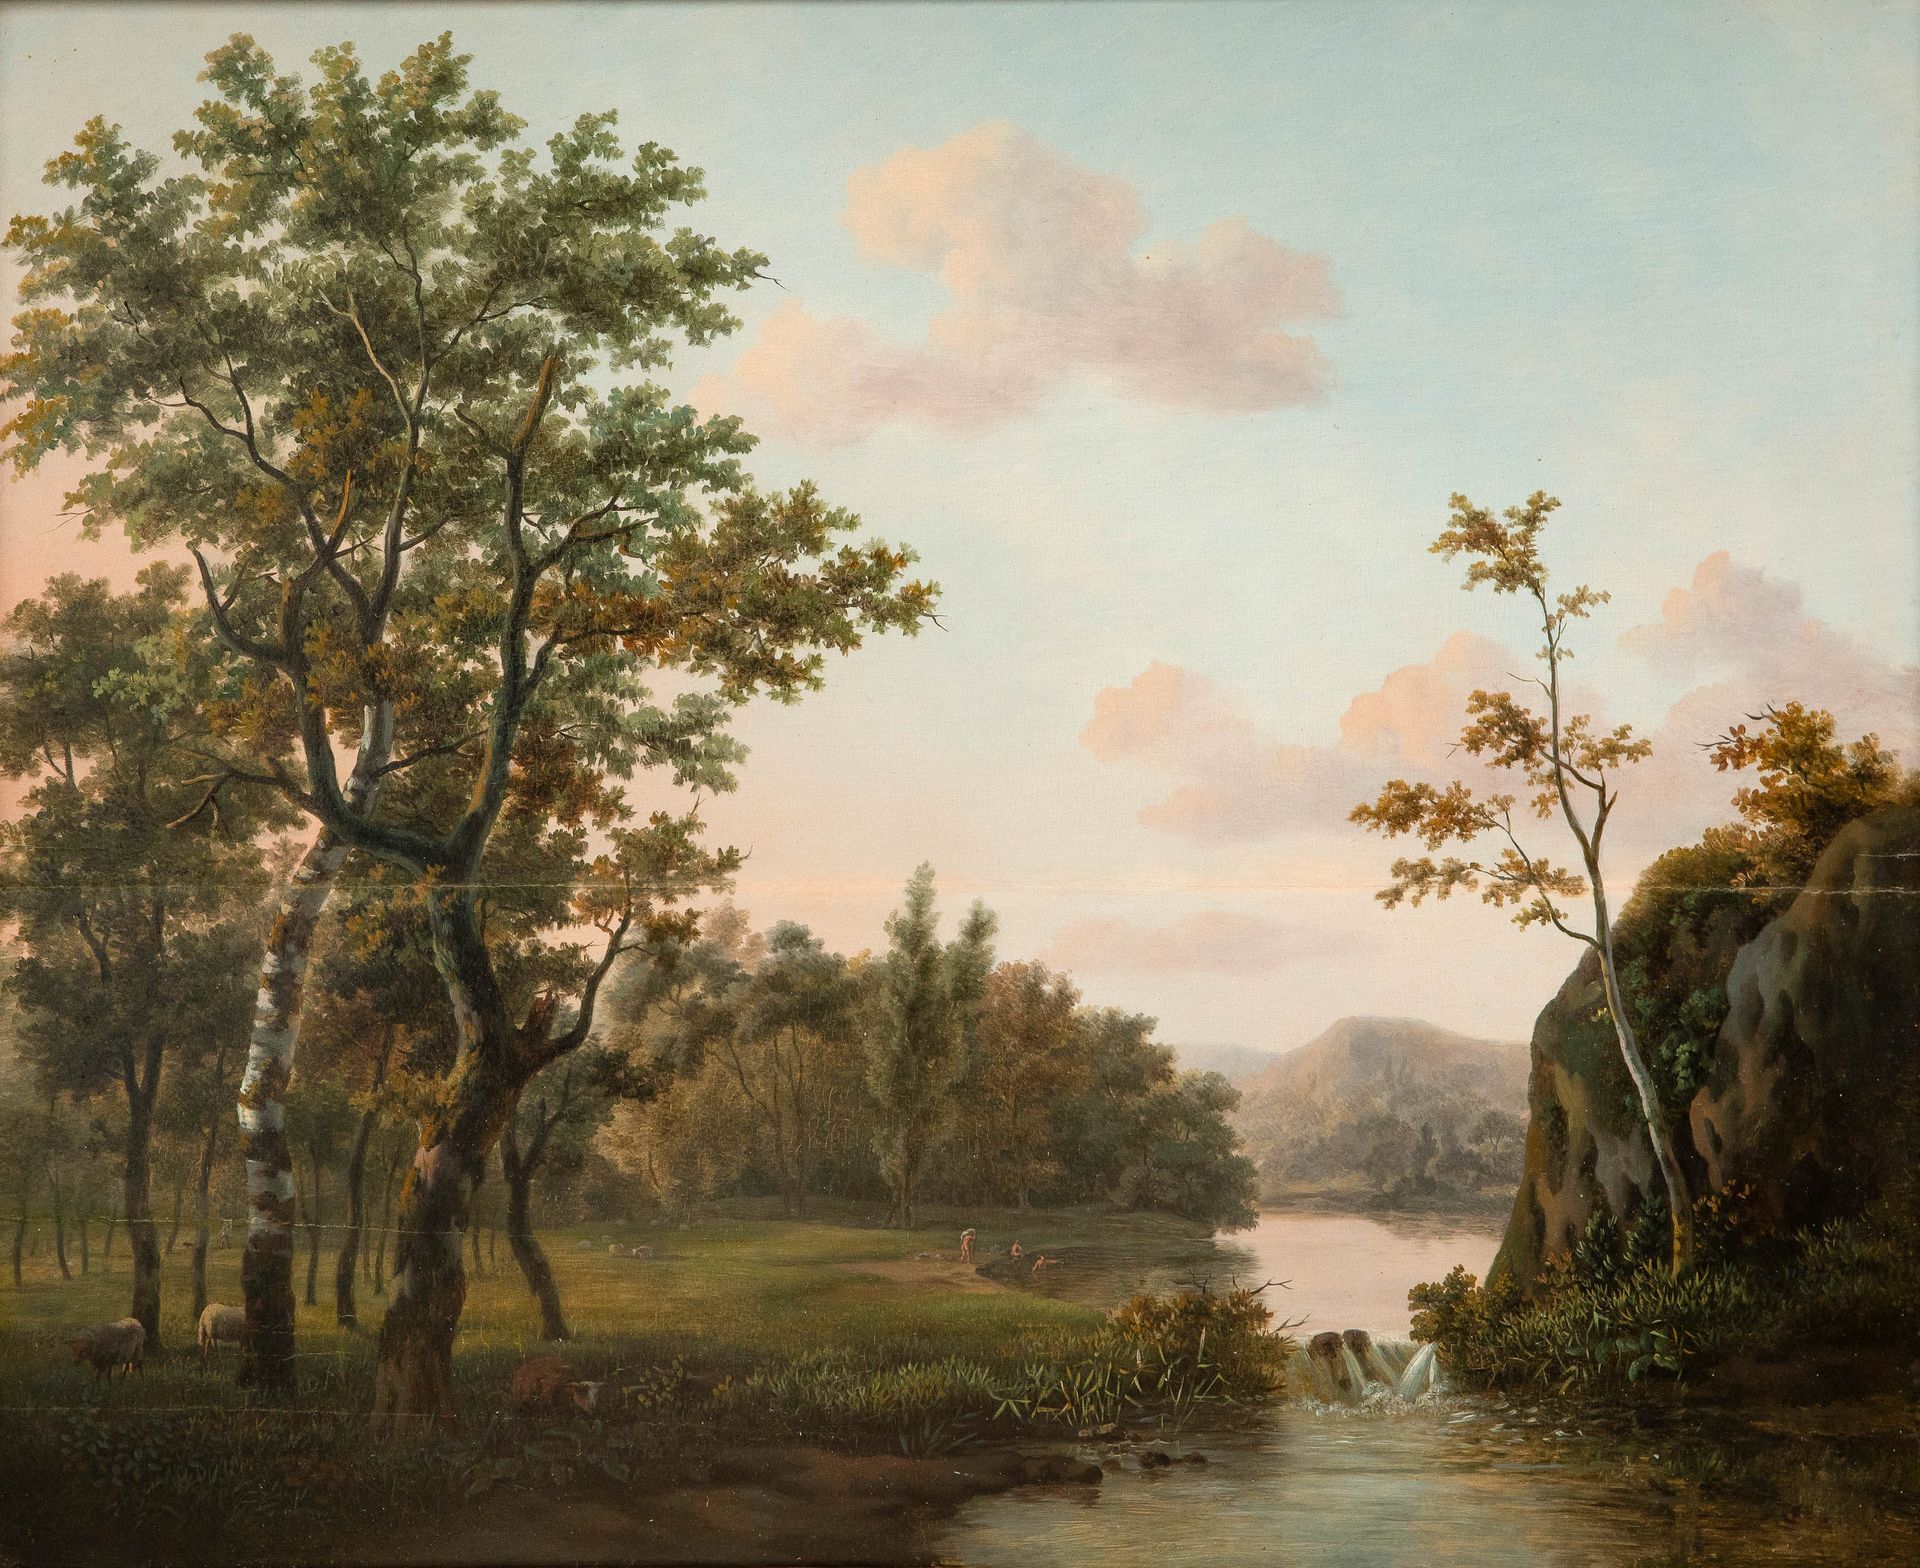 MARINUS ADRIANUS KOEKKOEK (1807-1868) (dintorni)

Bagnanti in un vasto paesaggio&hellip;